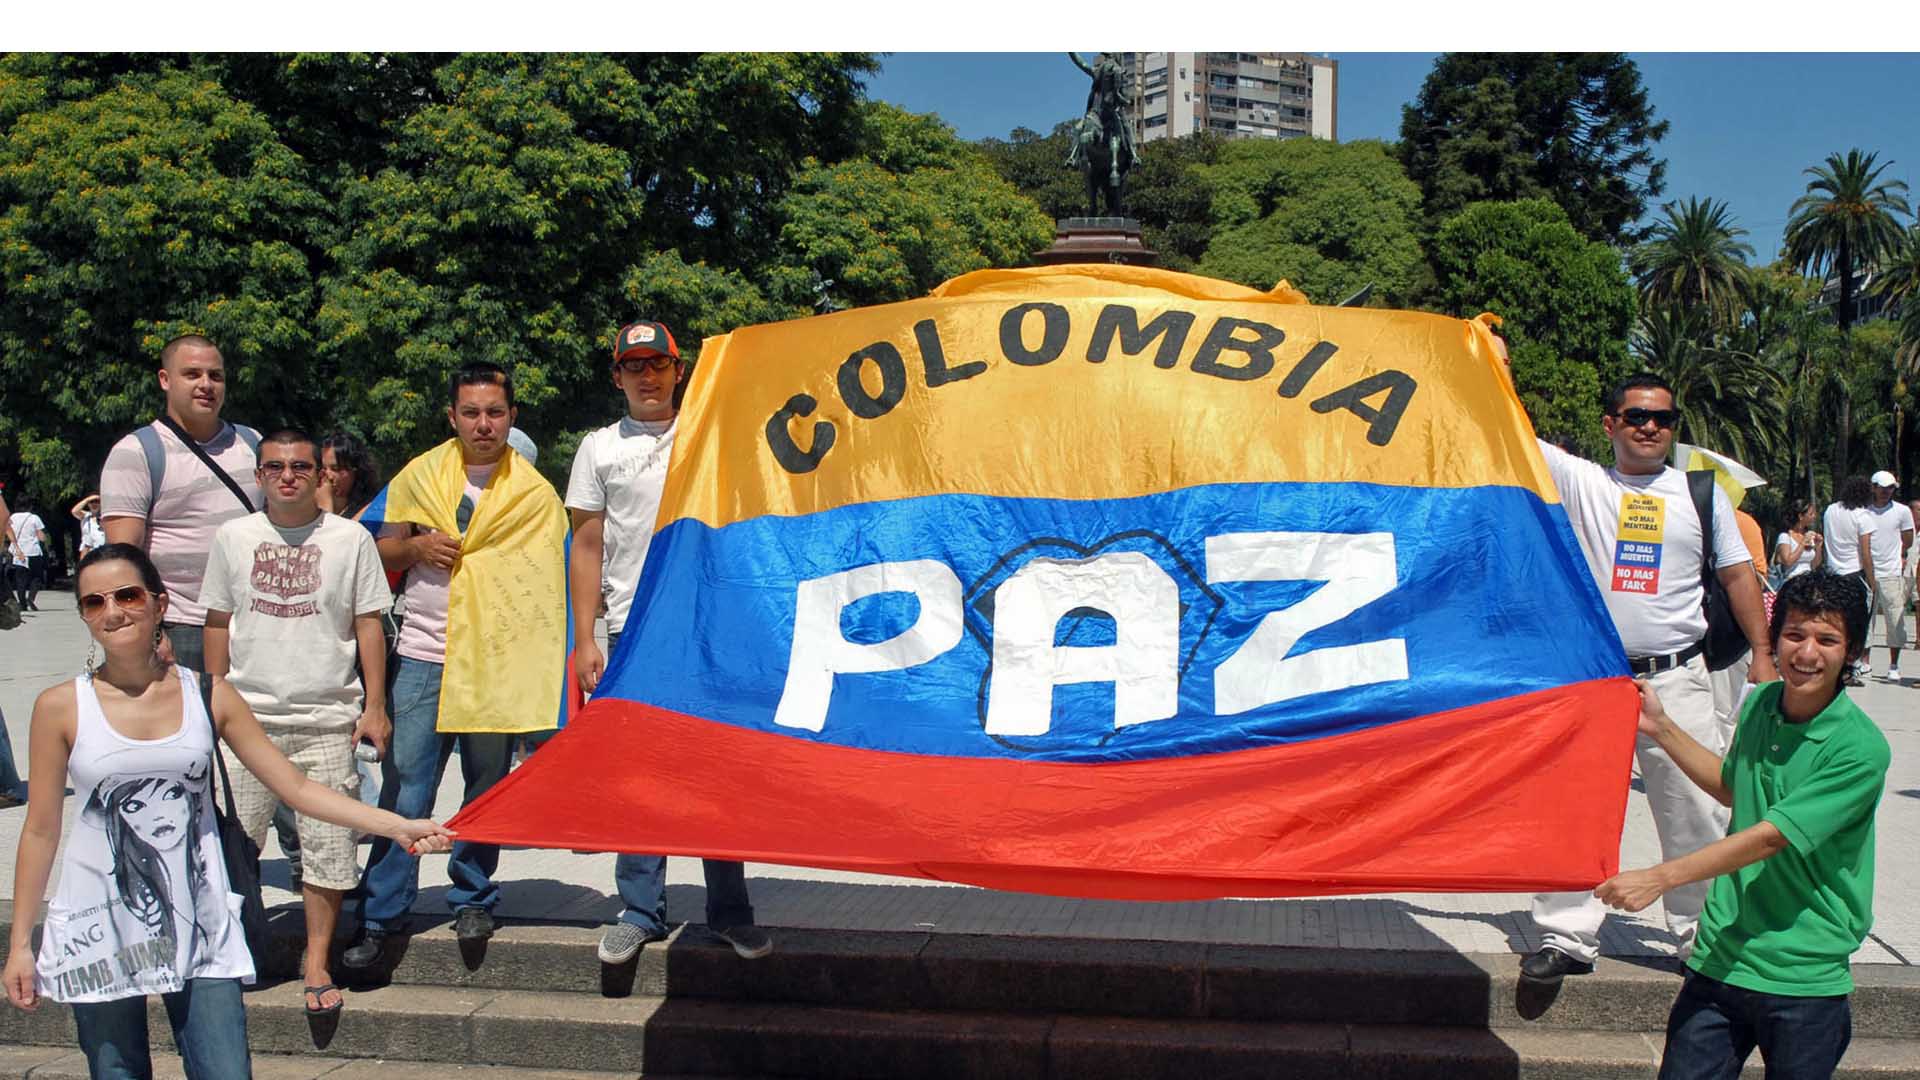 El primer mandatario colombiano asegura que solo afinan los últimos detalles para finalizar al conflicto armado que inició en 1964, posiblemente en Cartagena o Bogotá